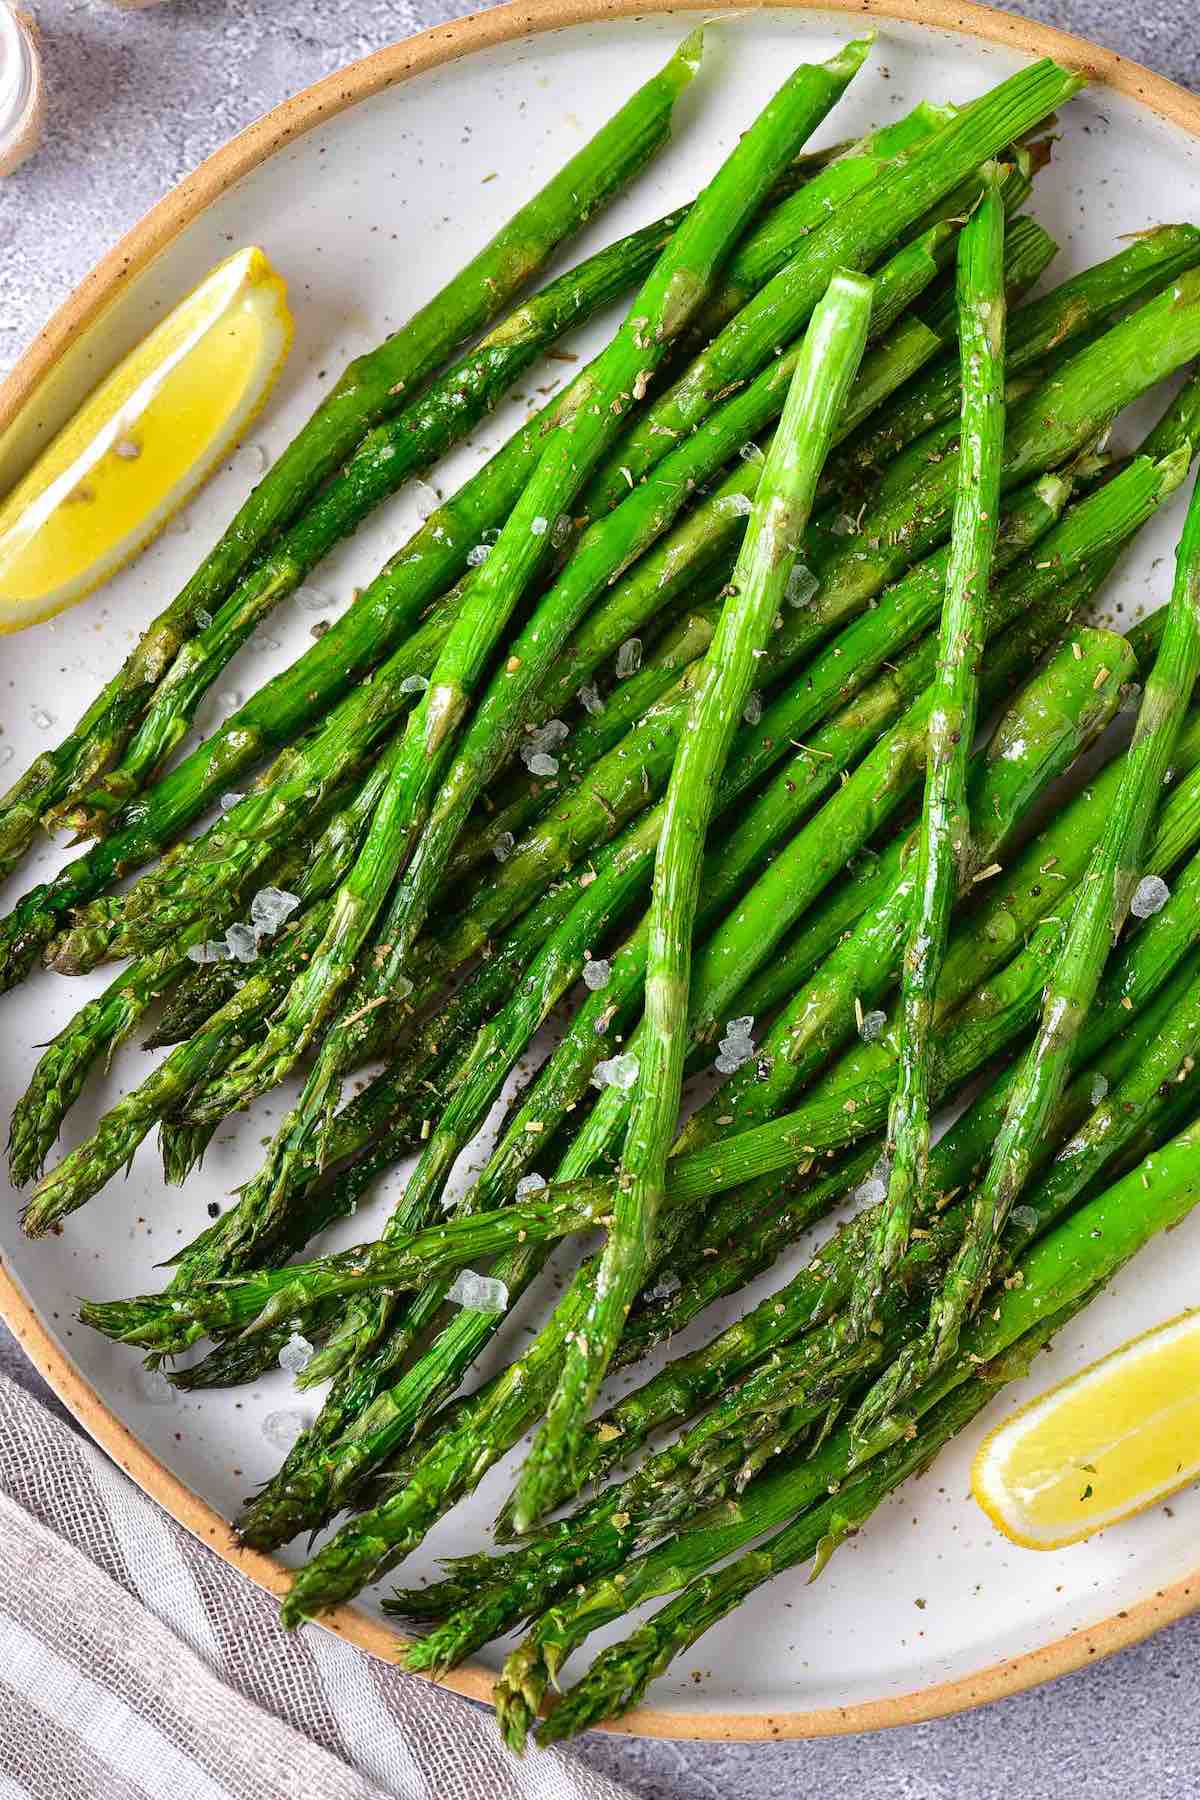 asparagus in air fryer.